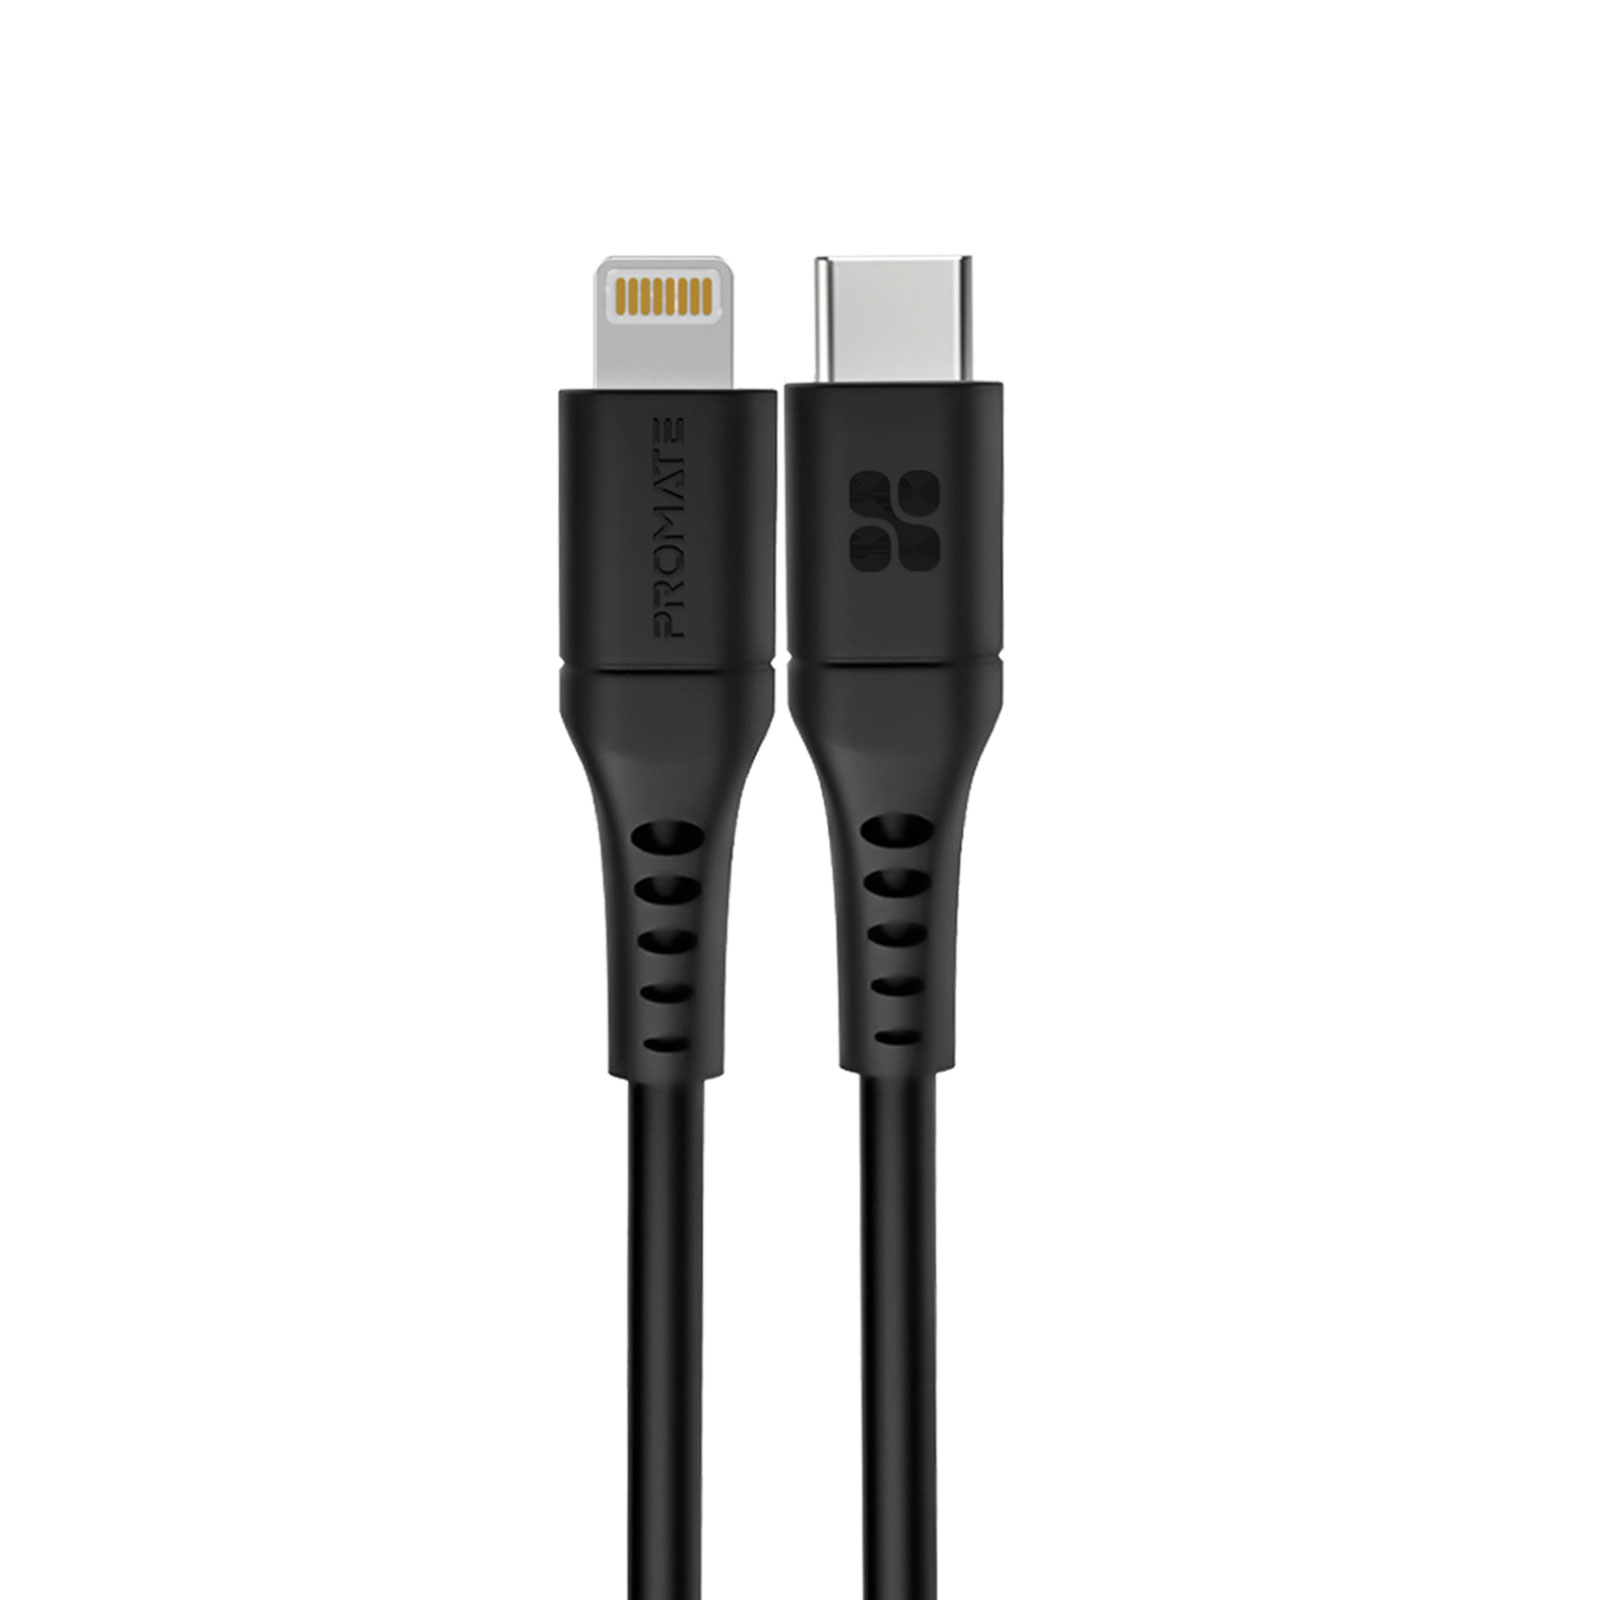 Promate USB-C to Lightning Cable 2m, Powerful 20W Power Delivery Fast Charging Silicone Lightning Cable with 480 Mbps Data Sync and 3A Power Output for iPhone 13/13 Pro/13 Pro Max, iPad Pro, PowerLink-200 Black